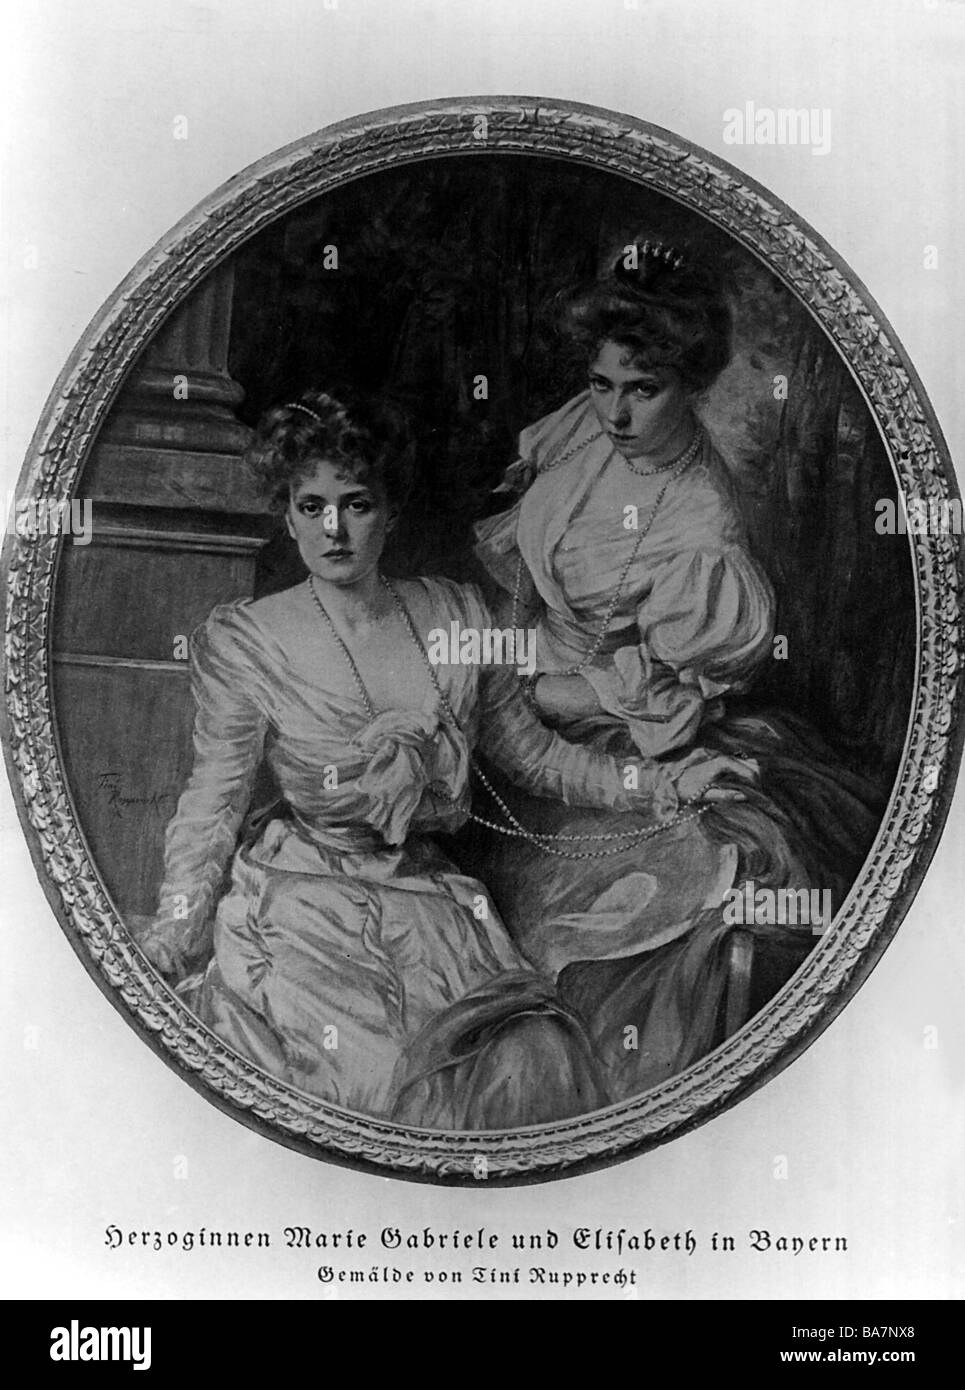 SISSI Y FRANCISCO JOSÉ Elisabeth-amalie-de-baviera-24-12-1837-10-9-1898-emperatriz-consorte-de-austria-desde-24-4-1854-reina-consorte-de-hungria-llamada-isi-como-joven-mujer-con-su-hermana-marie-gabriele-pintando-por-tini-rupprecht-ba7nx8